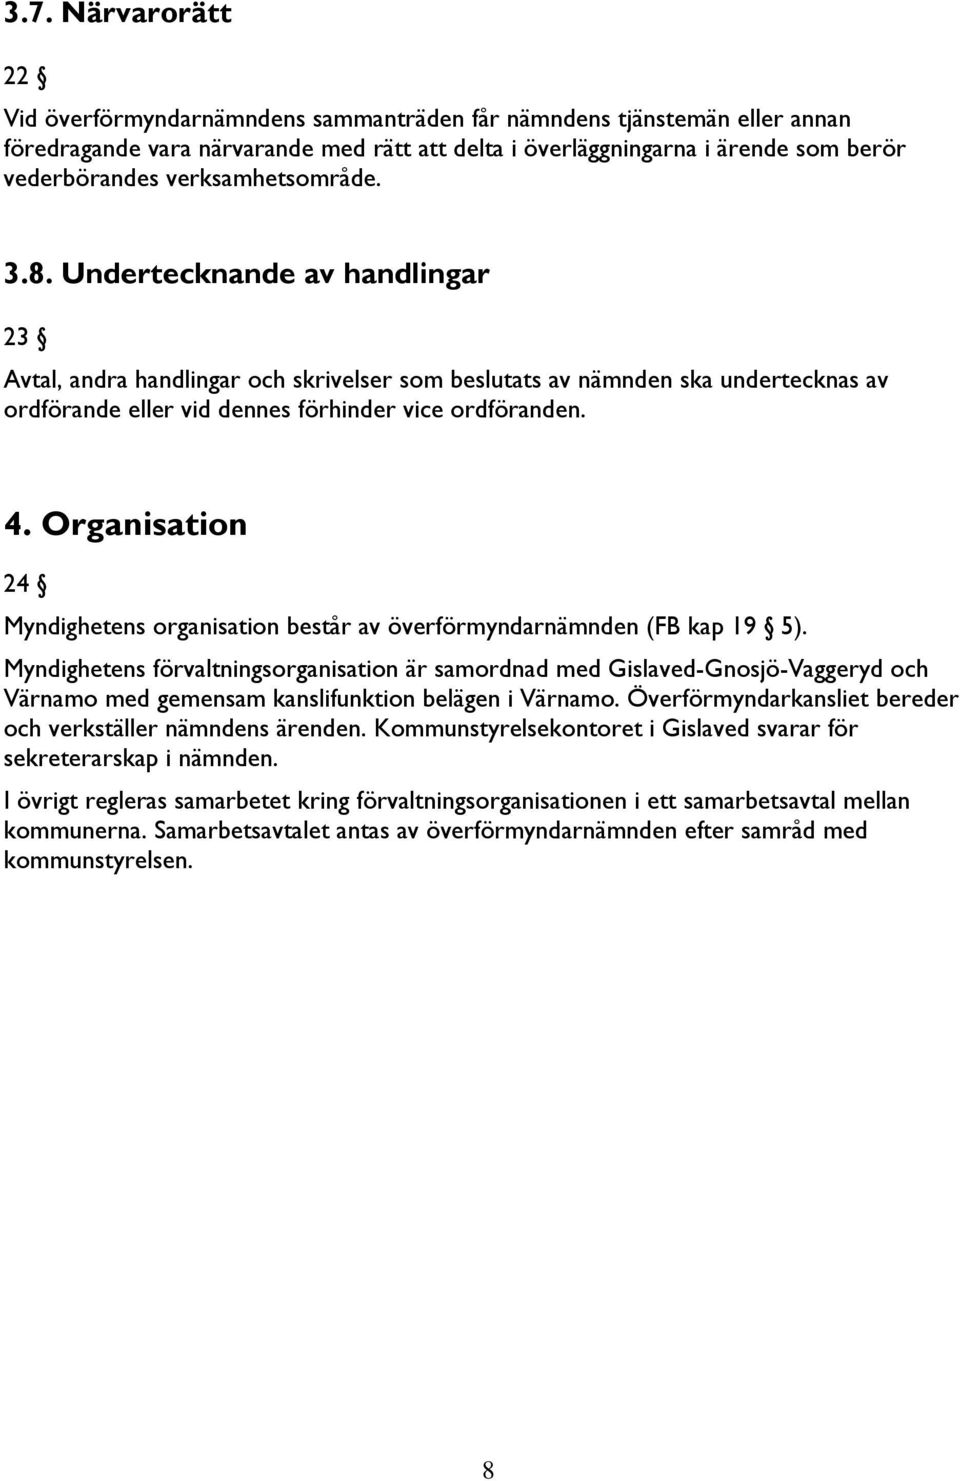 Organisation 24 Myndighetens organisation består av överförmyndarnämnden (FB kap 19 5).